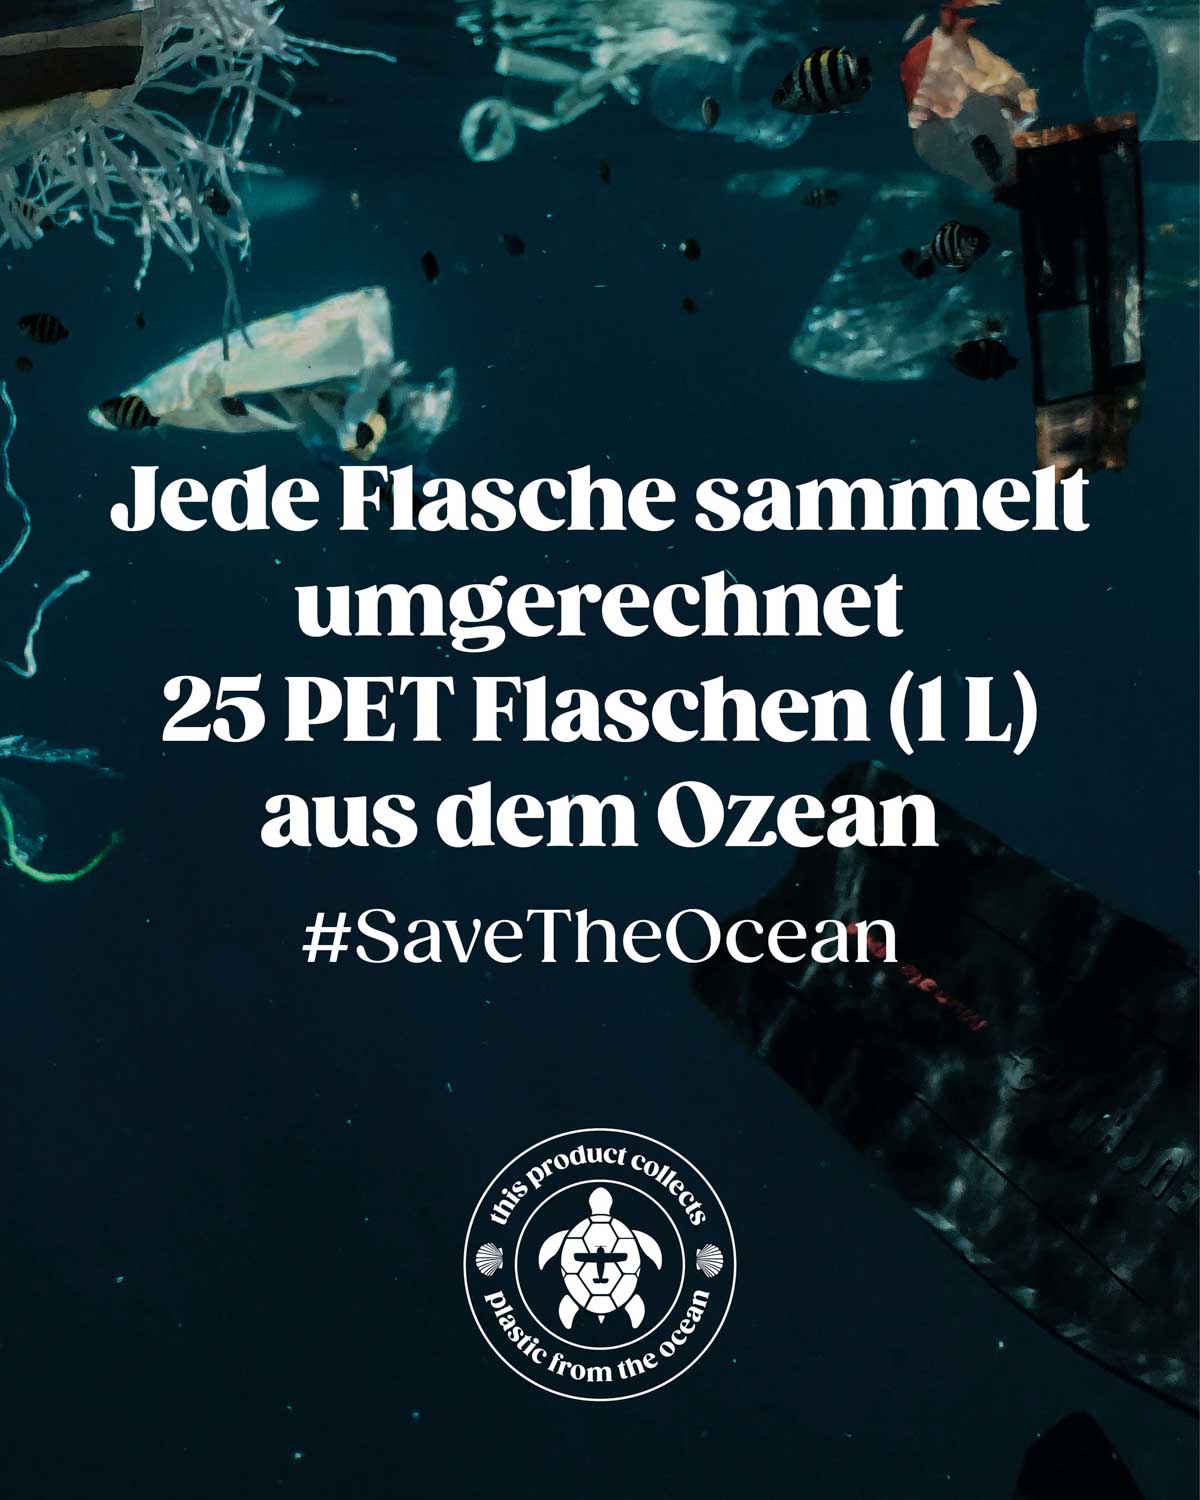 Dieses Bild verdeutlicht die alarmierende Verschmutzung der Meere durch Plastikmüll, der sich unter Wasser ansammelt. Jede verkaufte BIRDS-Flasche ermöglicht uns, etwa 25 PET-Flaschen (1L) aus dem Ozean zu bergen. Wir verfolgen diese wichtige Mission gemeinsam mit der Organisation Plastic Free Planet und begleiten sie mit dem Hashtag #savetheocean, um erfolgreich einen Beitrag zu leisten.